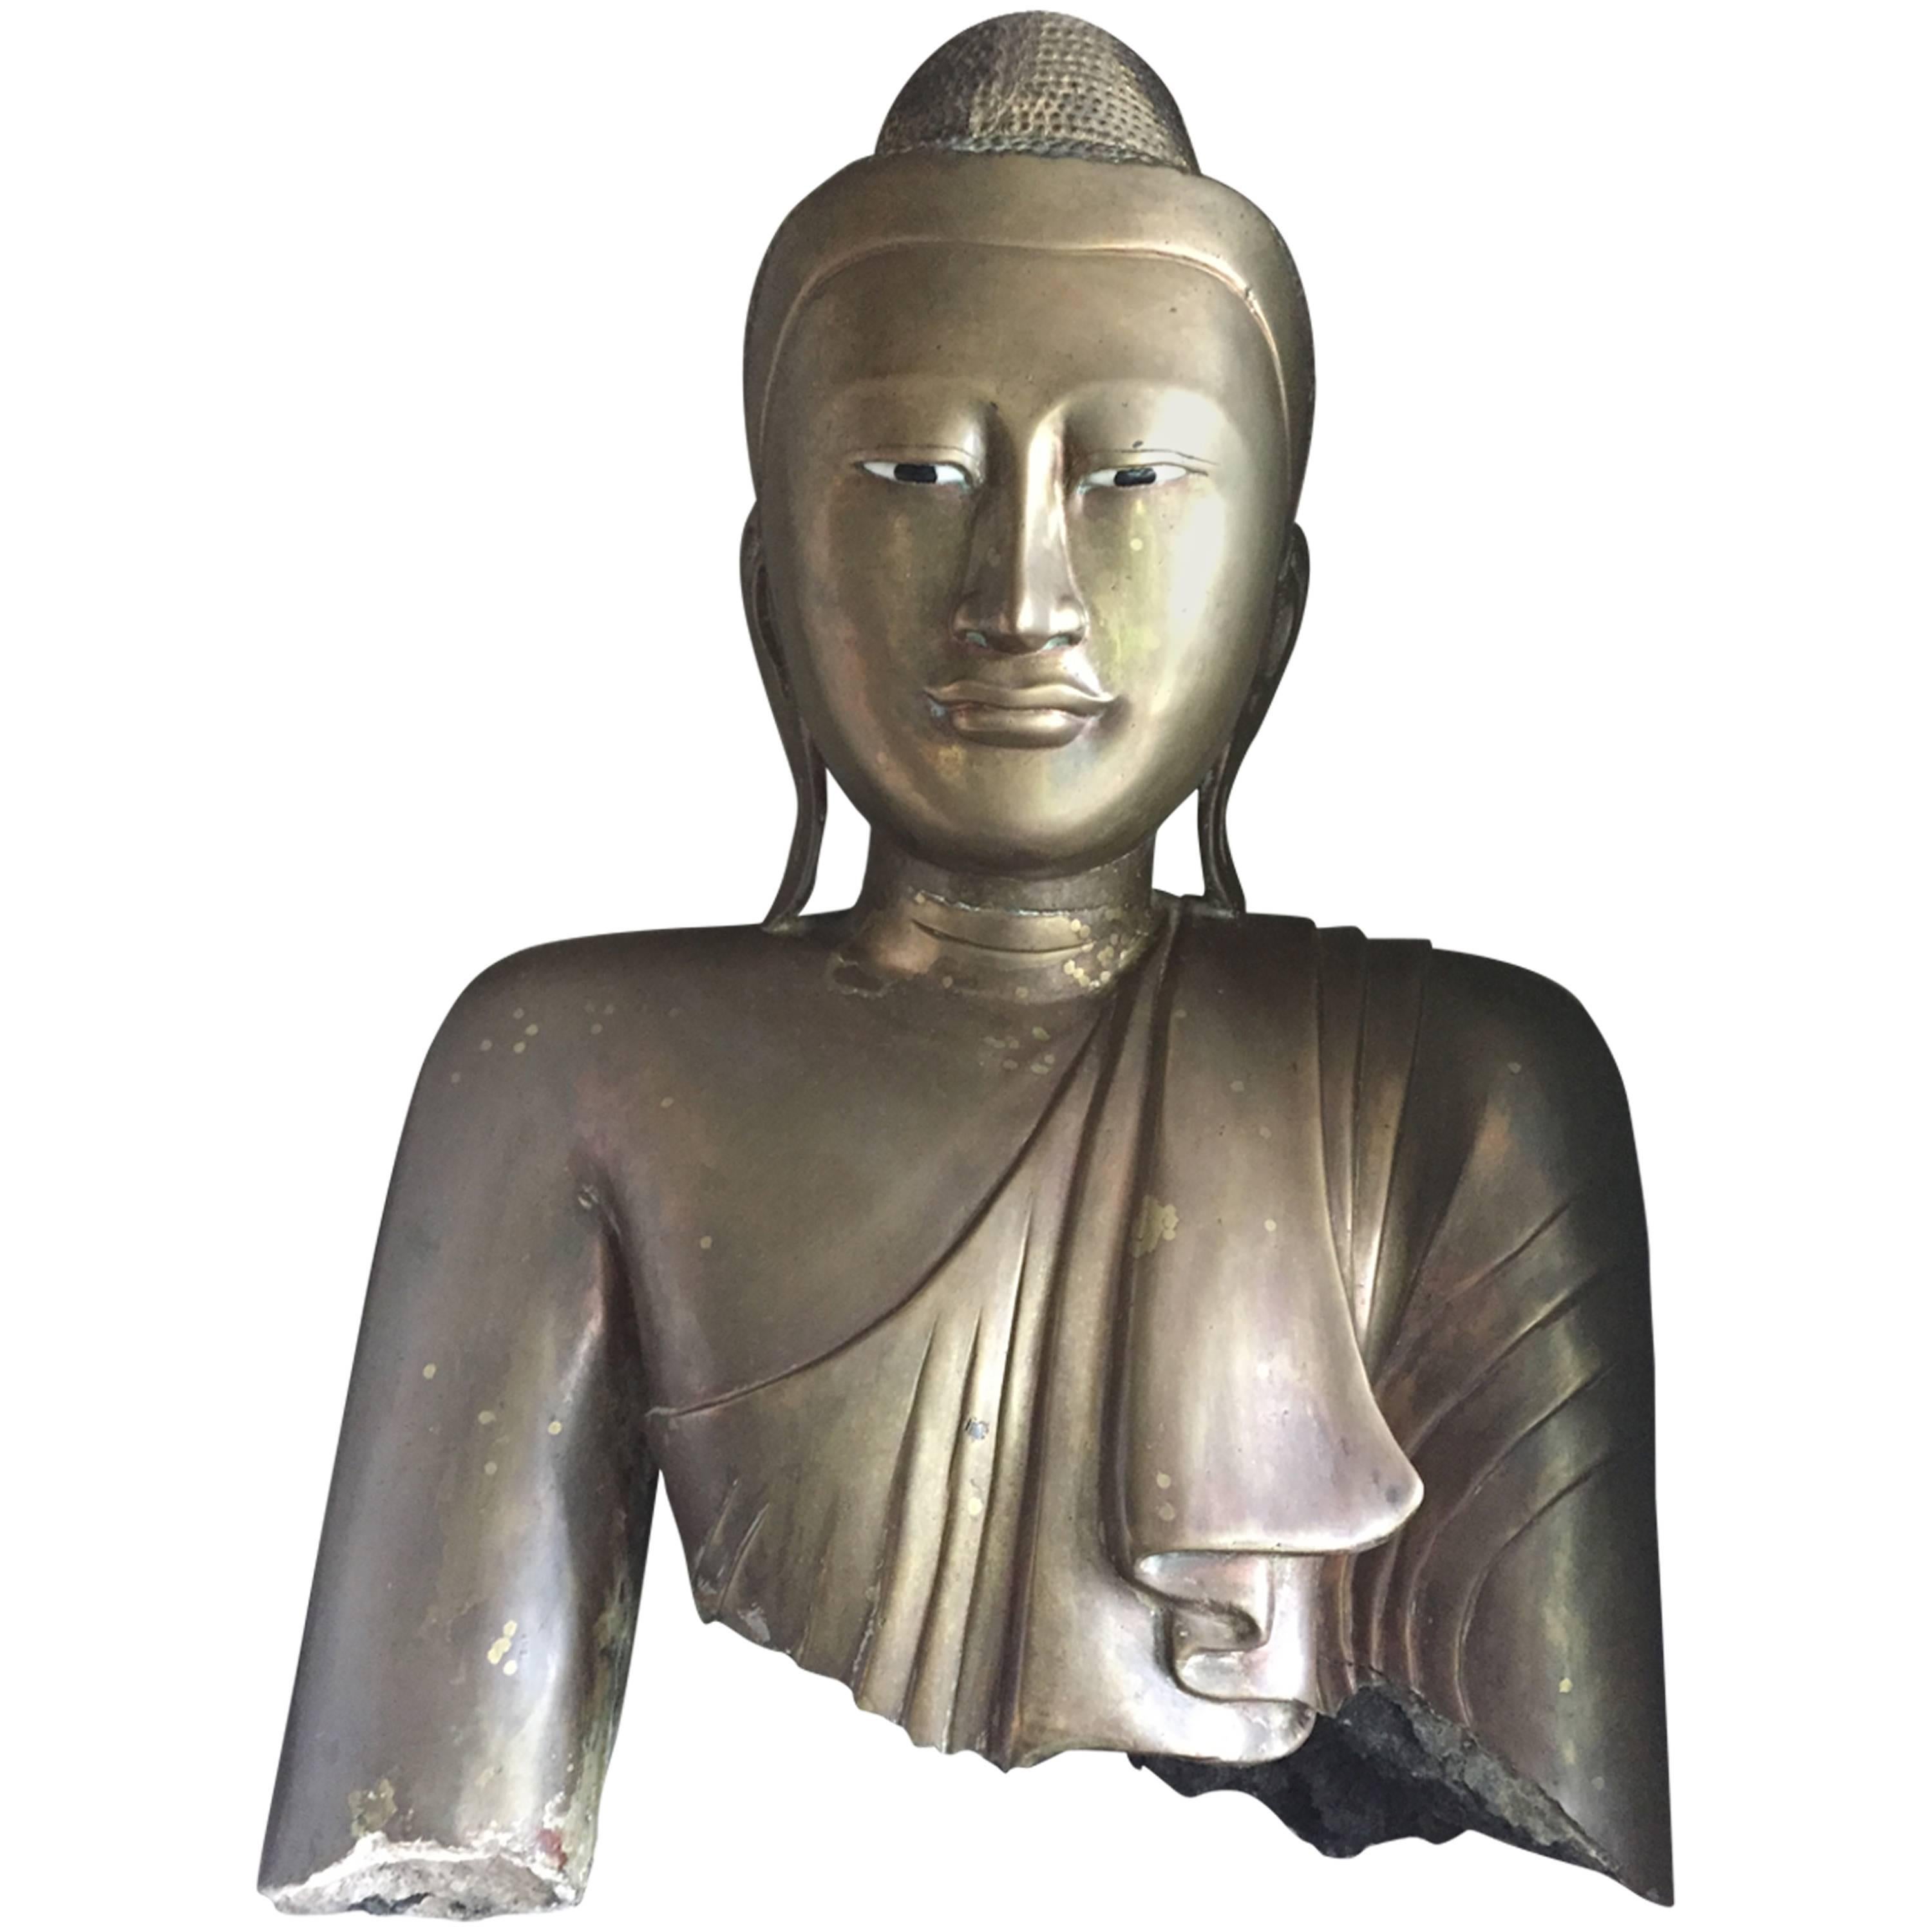 Eleganter antiker Buddhakopf, vergoldete Bronze, 19. Jahrhundert, Birma,
schöner Kopf und Torso des Buddha, einfache starke Linien und  friedlicher Ausdruck des Gesichts,
tolle antike Patina der Bronze mit Spuren der Farbe, warmes Finish der